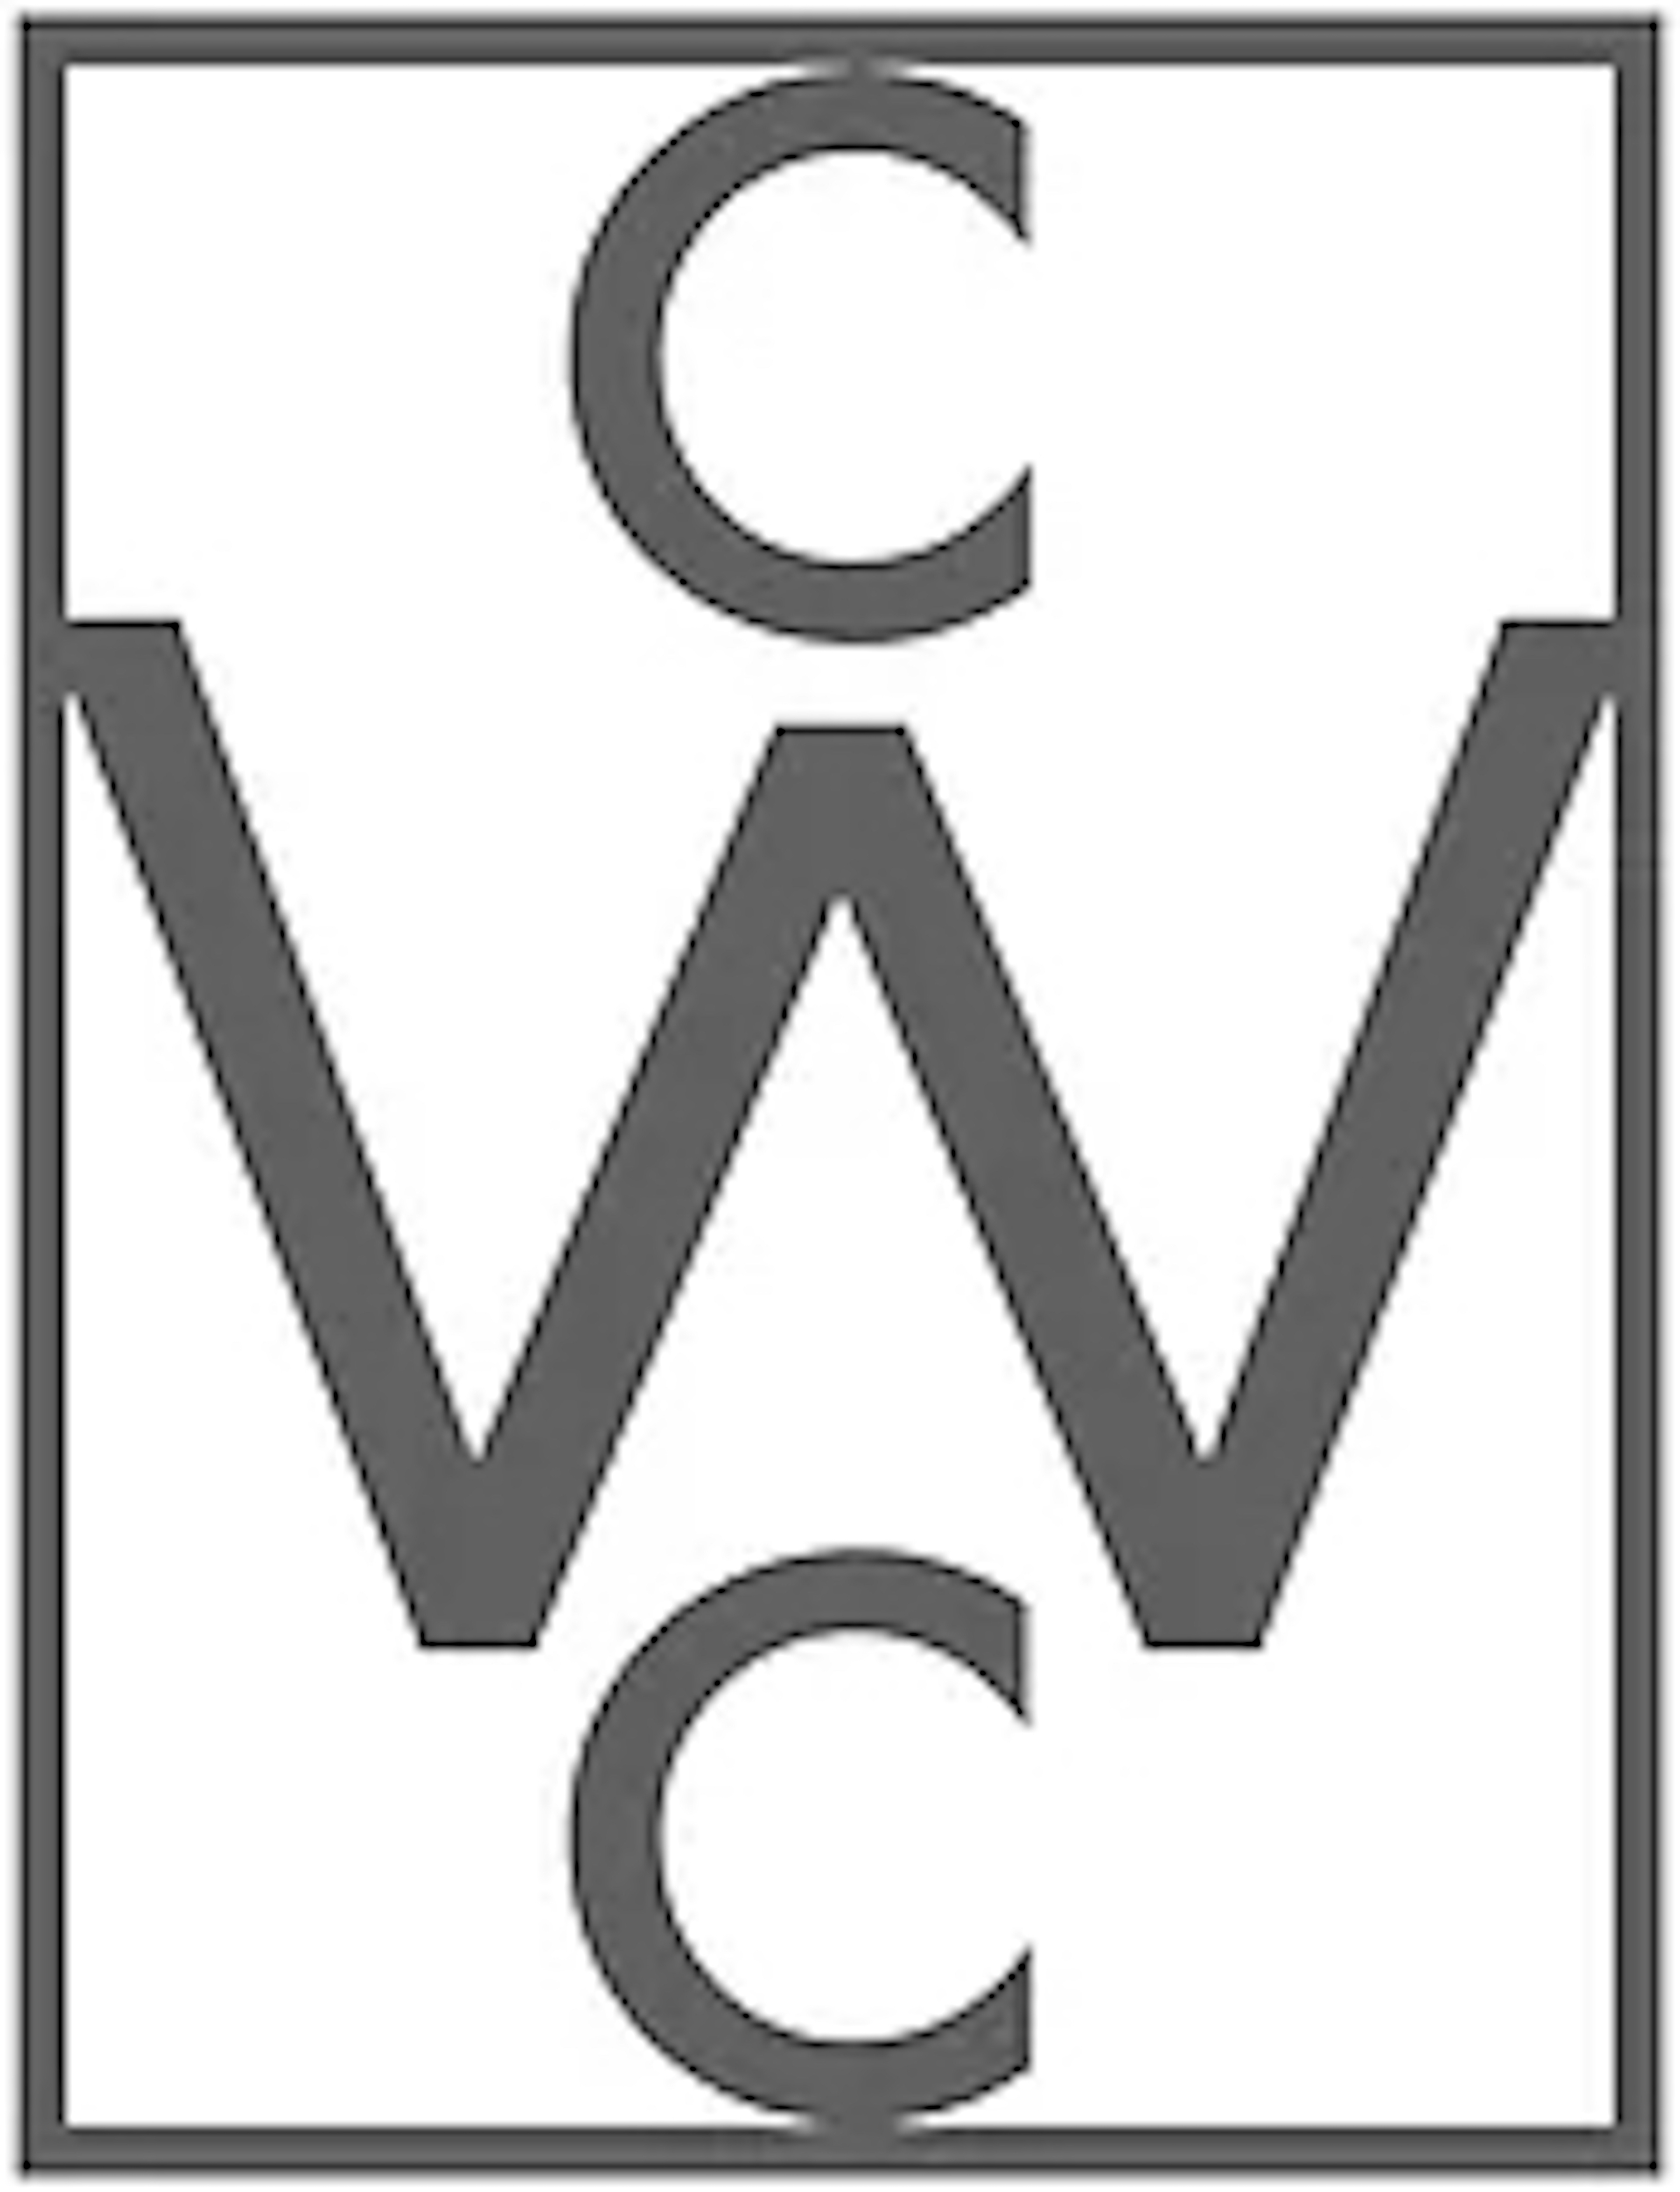 Corcoran Women's Committee logo